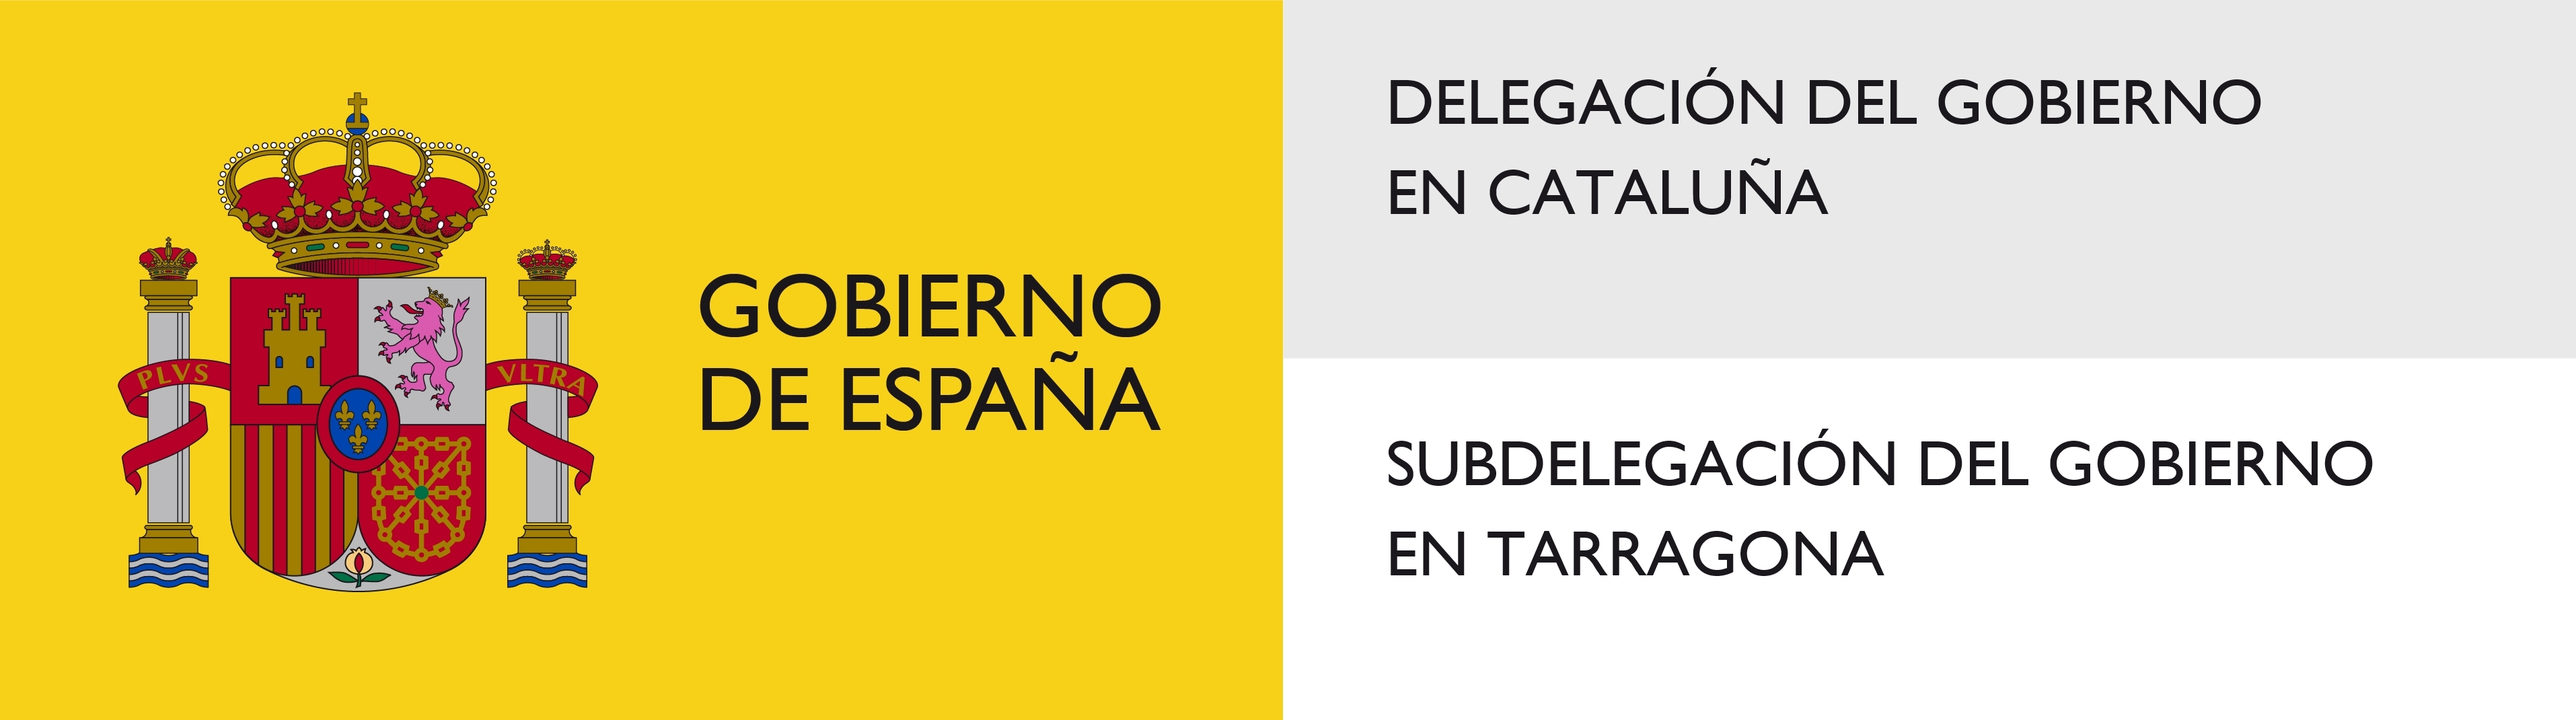 Subdelegació del Govern a Tarragona